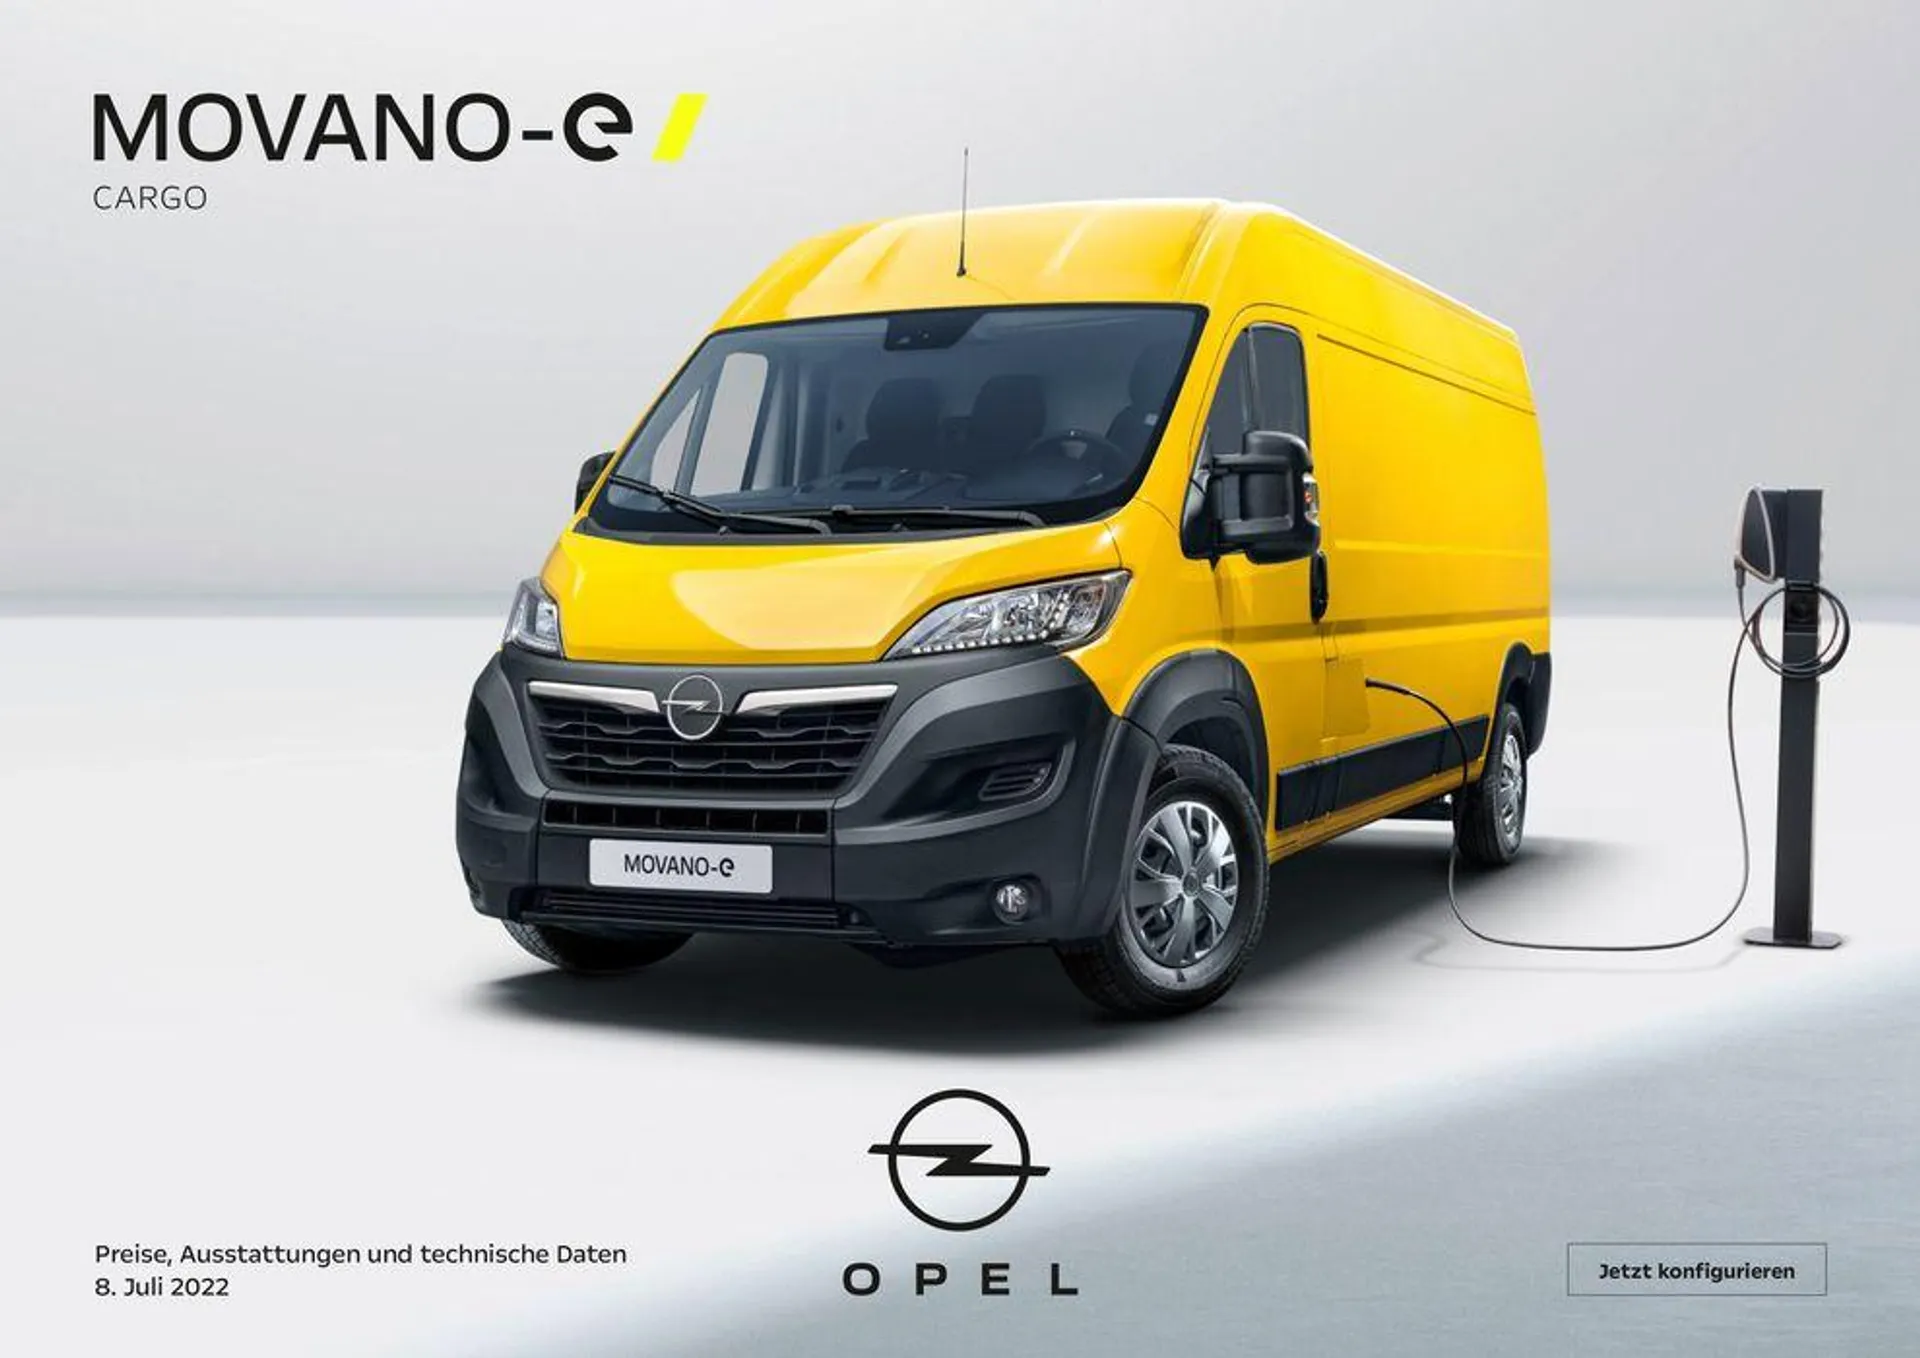 Opel Movano-e Cargo - 1